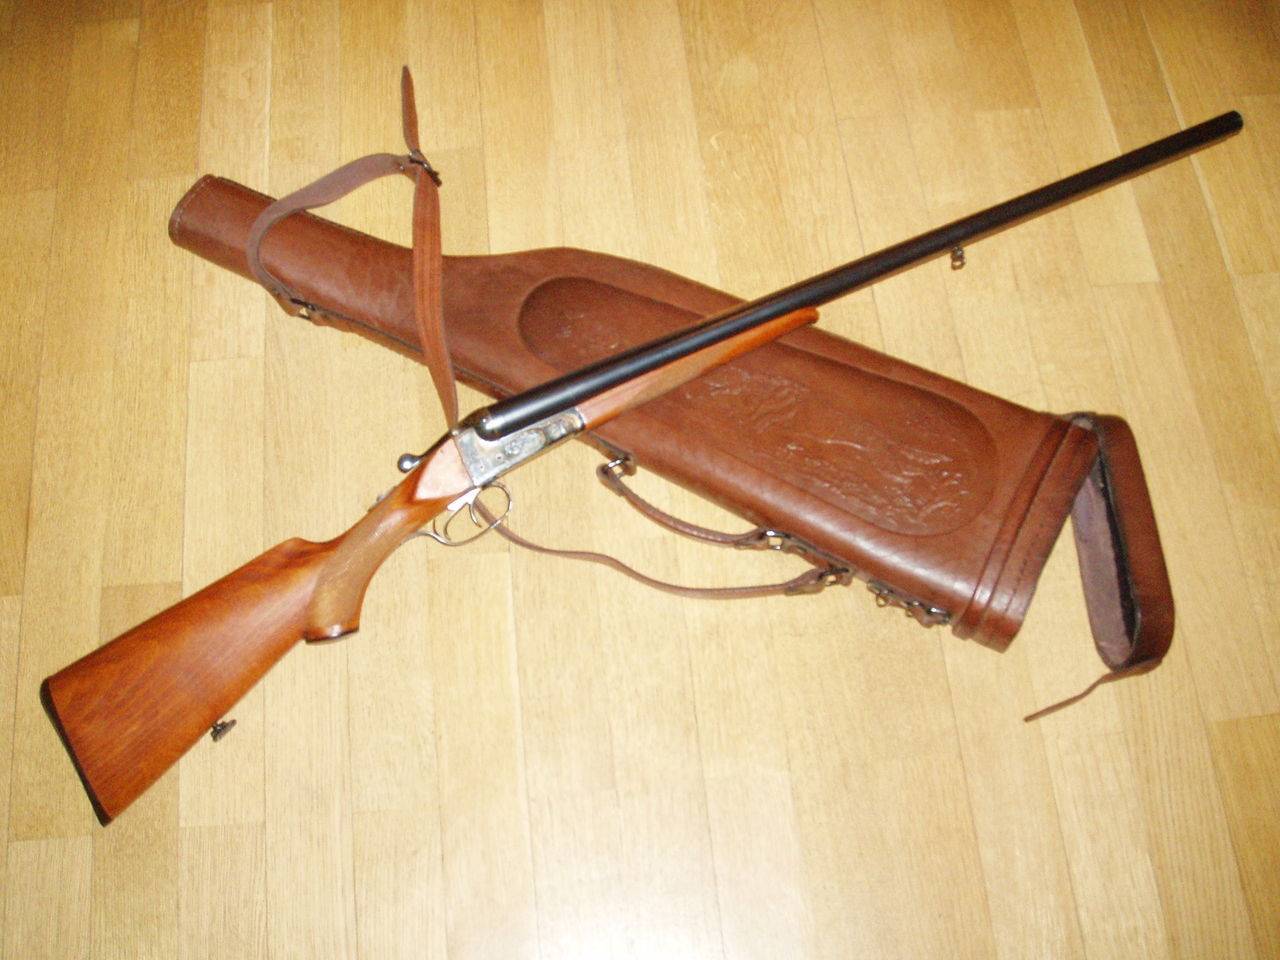 ИЖ-54 – отличное ружье еще советского производства